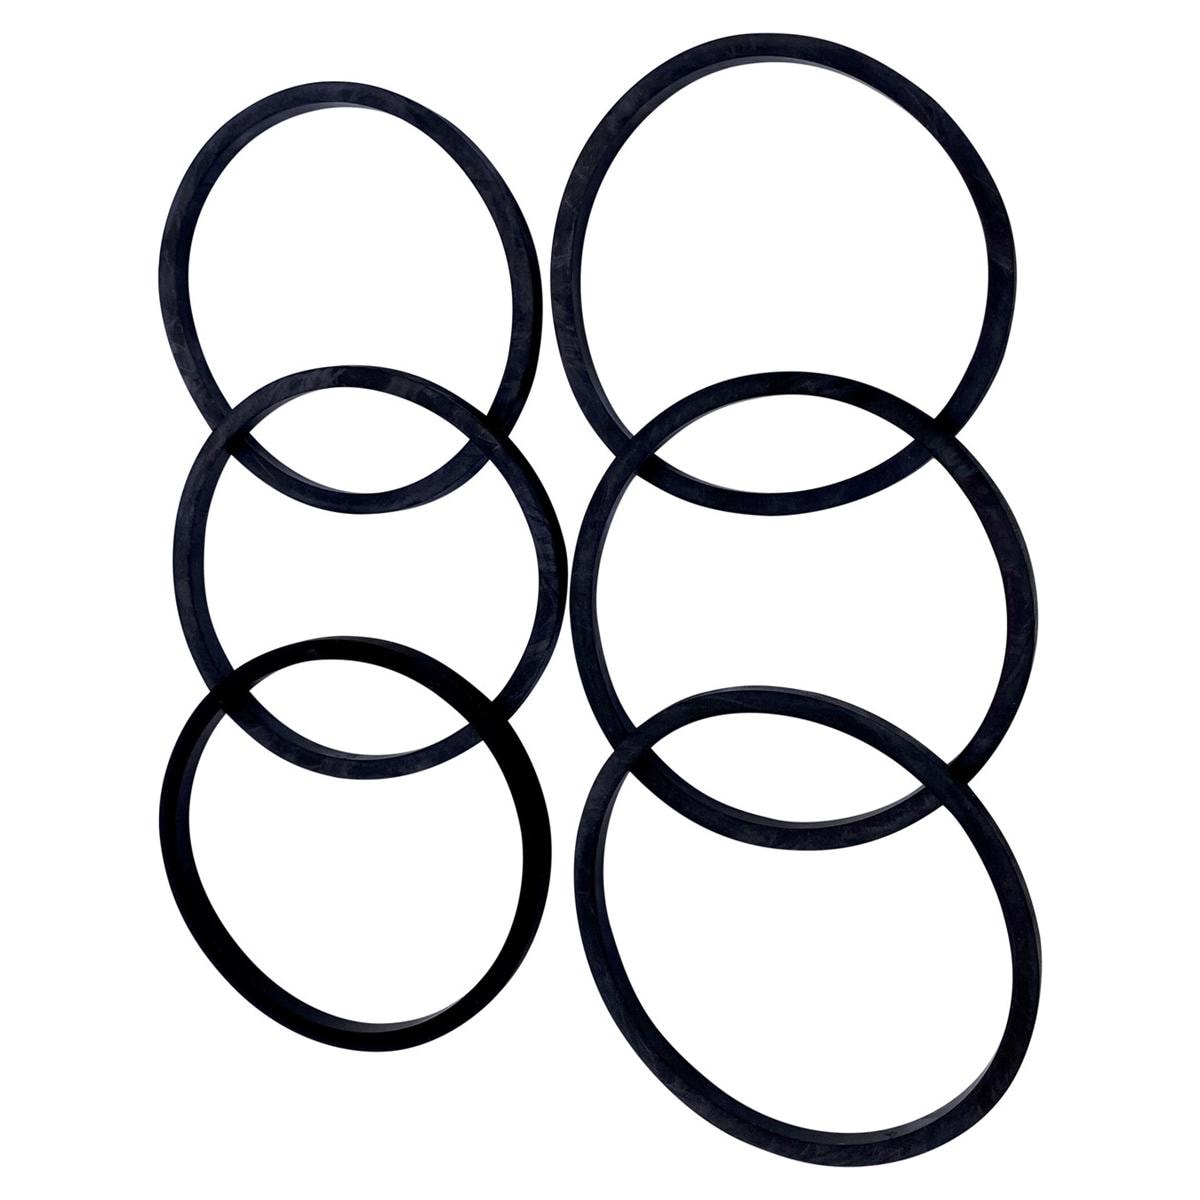 Accessoires voor Ultrasoonreiniger Sweep 2000 - Rubber ring voor bekerglas, 6 stuks